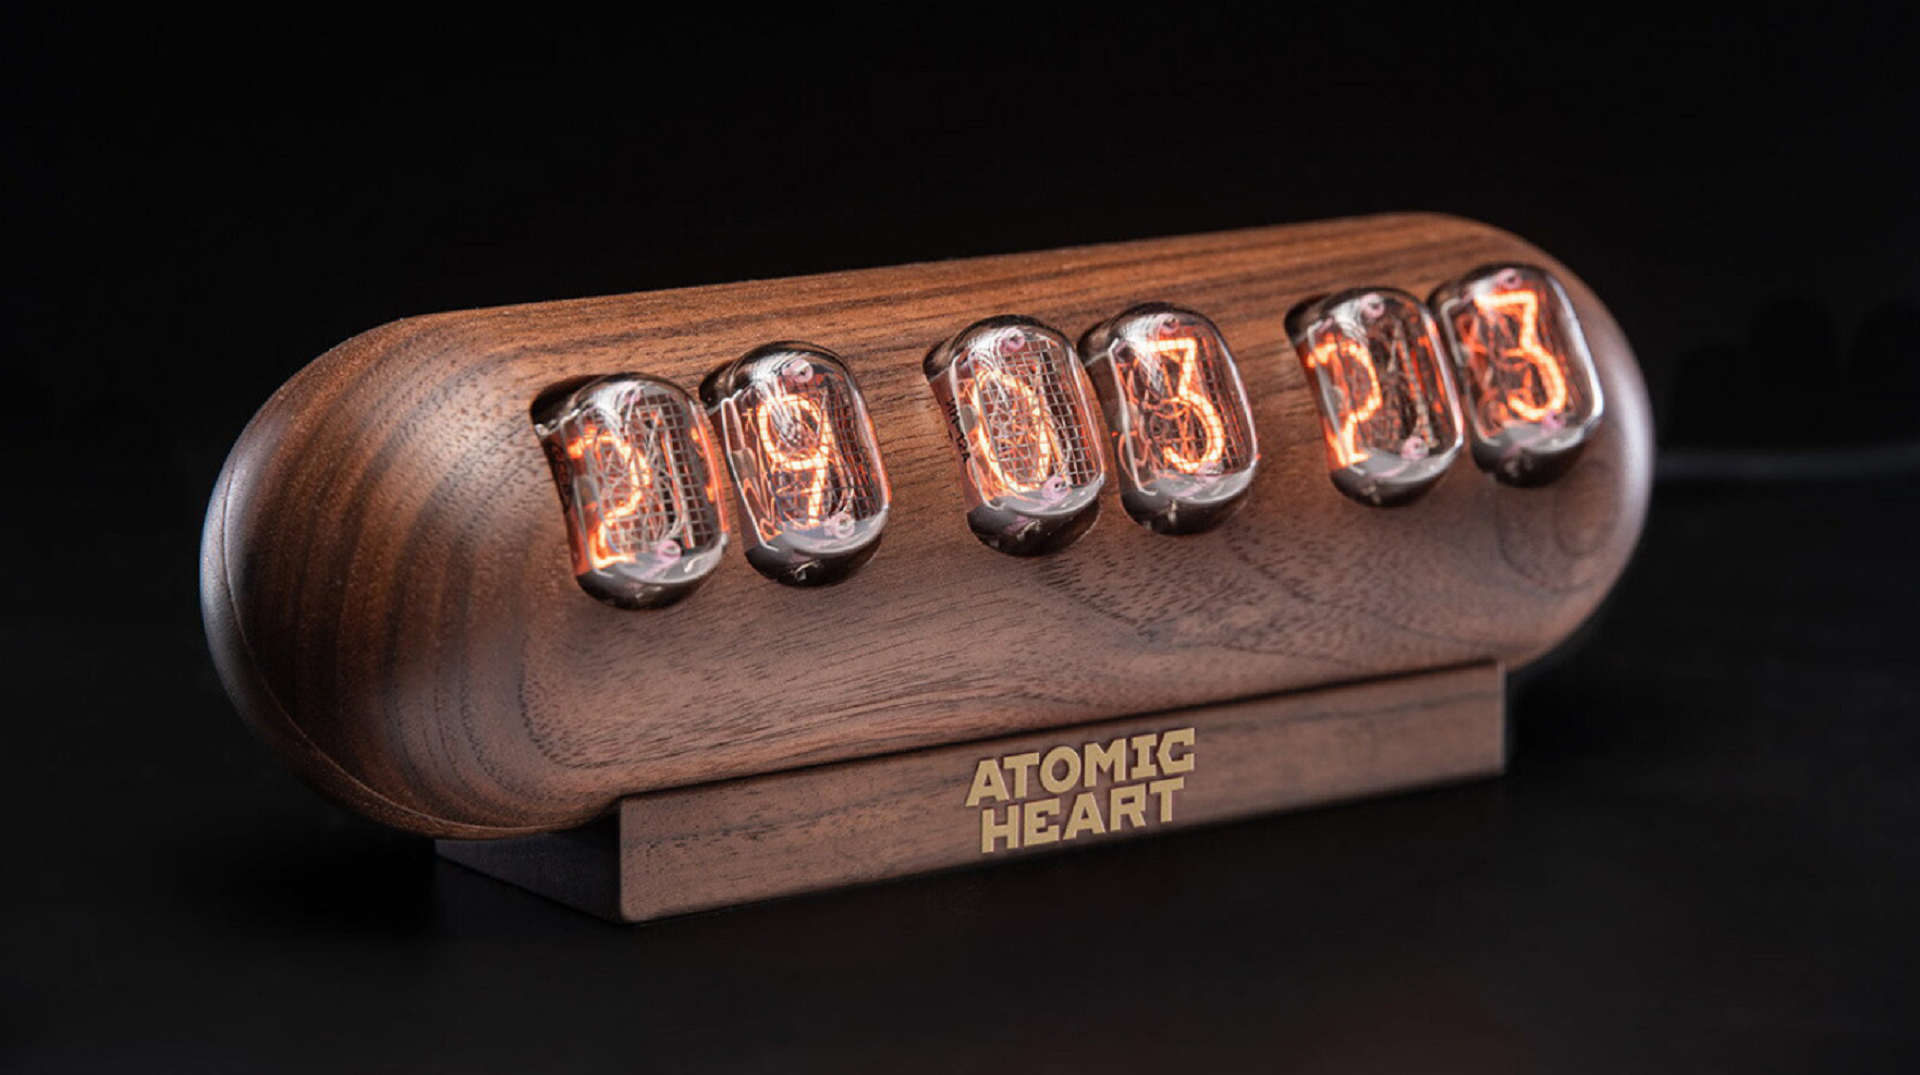 Mundfish выпустила ламповые часы в стилистике Atomic Heart за 50 тысяч рублей